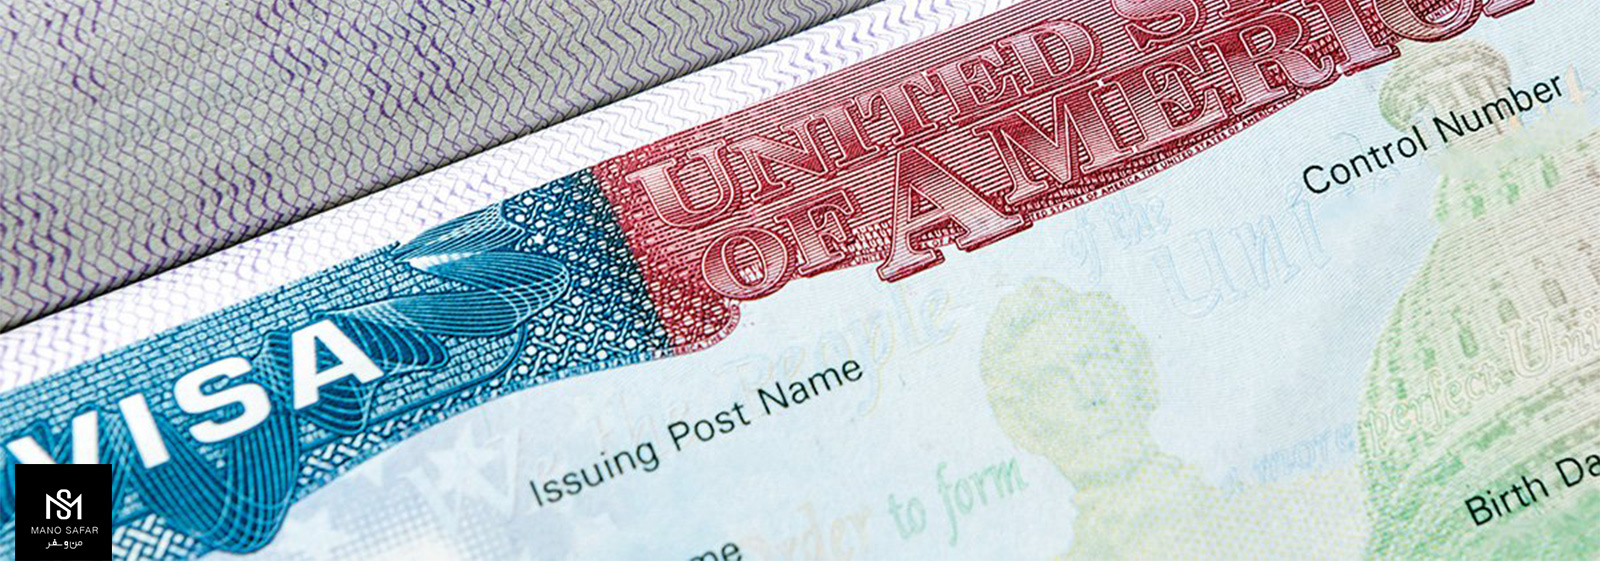 ویزای اعتباری منطقه محدود چیست؟ (شرایط اخذ و قوانین) (Limited territorial validity visa LTV)